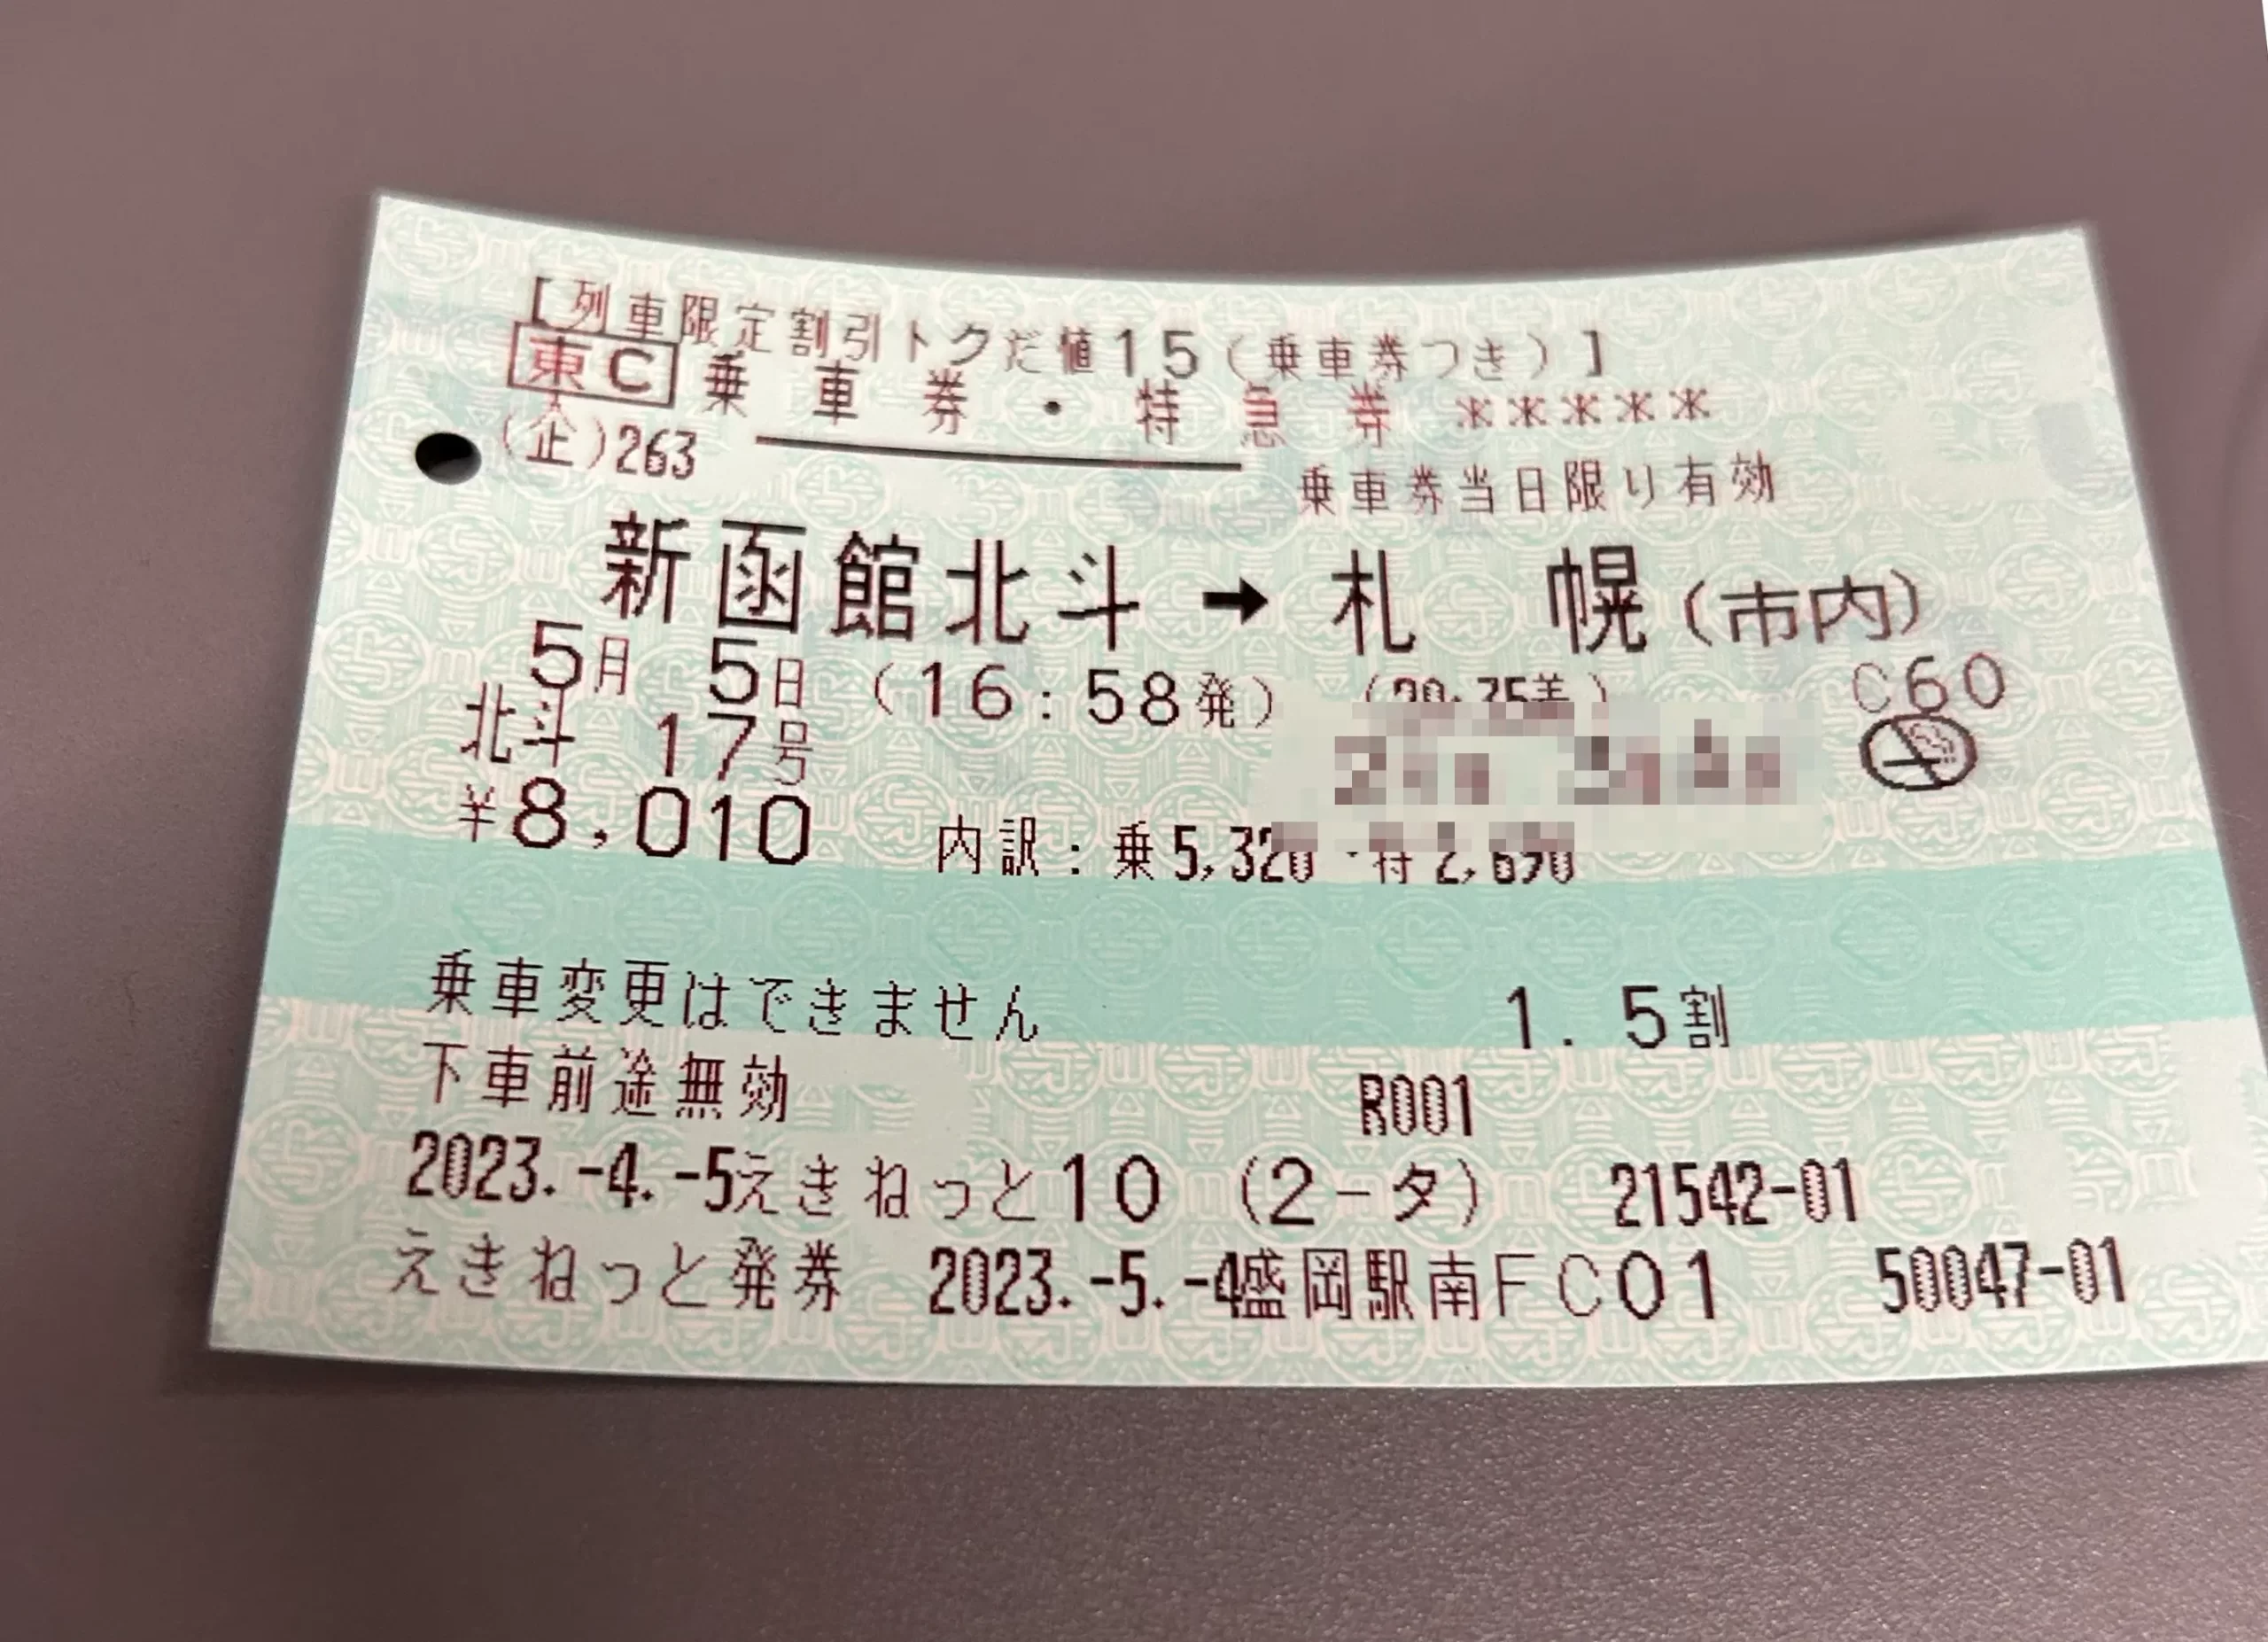 順調にいけば20時25分札幌駅に到着です。